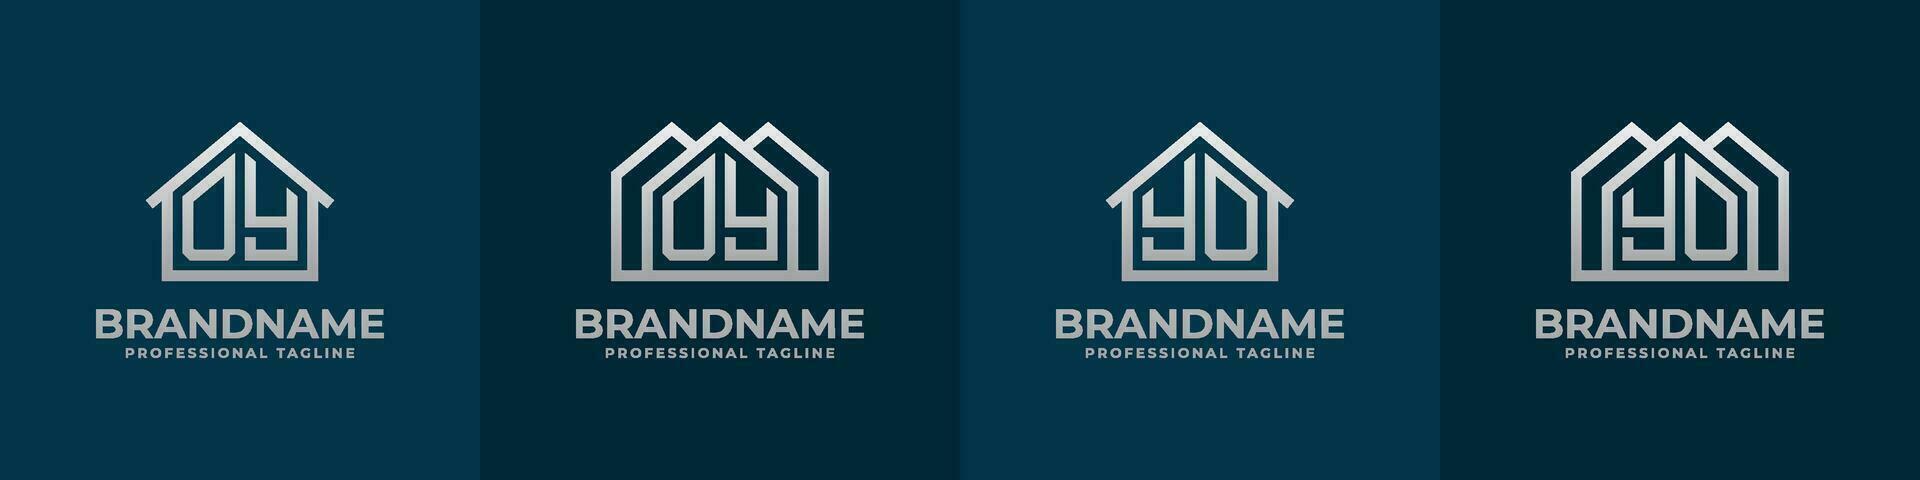 brief oy en yo huis logo set. geschikt voor ieder bedrijf verwant naar huis, echt landgoed, bouw, interieur met oy of yo initialen. vector